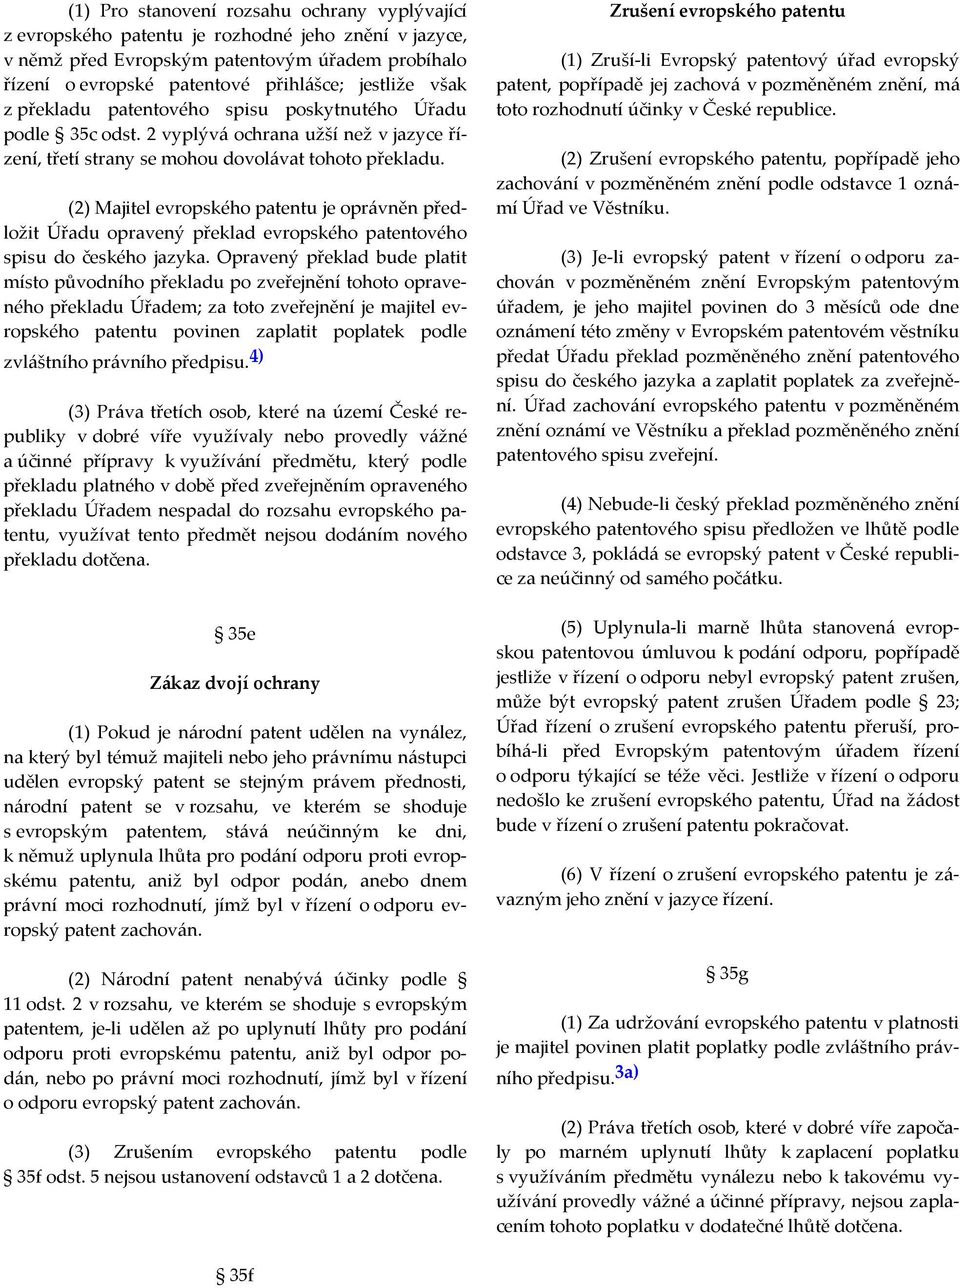 (2) Majitel evropského patentu je oprávněn předložit Úřadu opravený překlad evropského patentového spisu do českého jazyka.